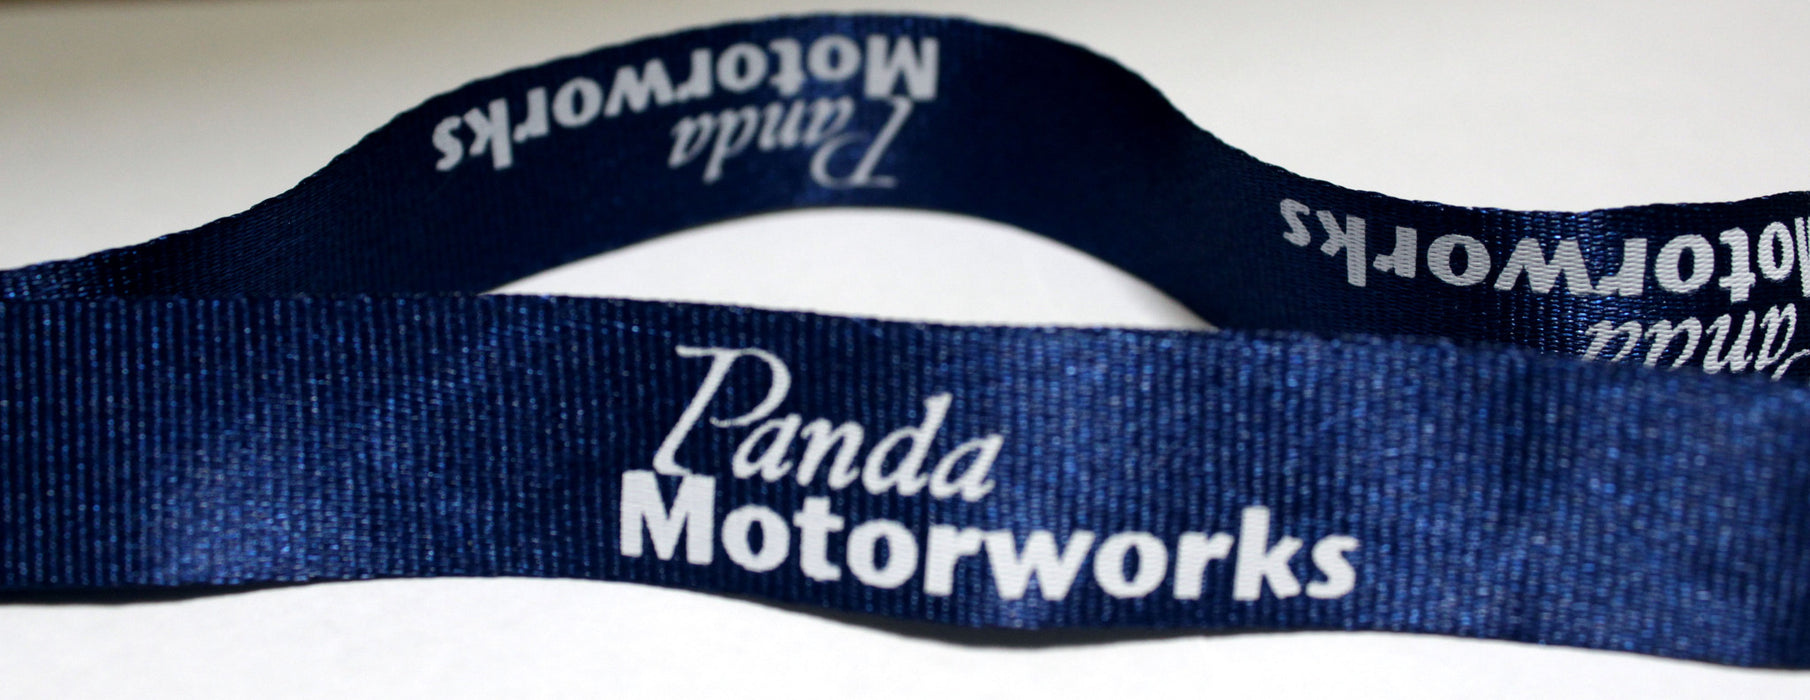 Panda Motorworks Lanyard - Panda Motorworks - 11